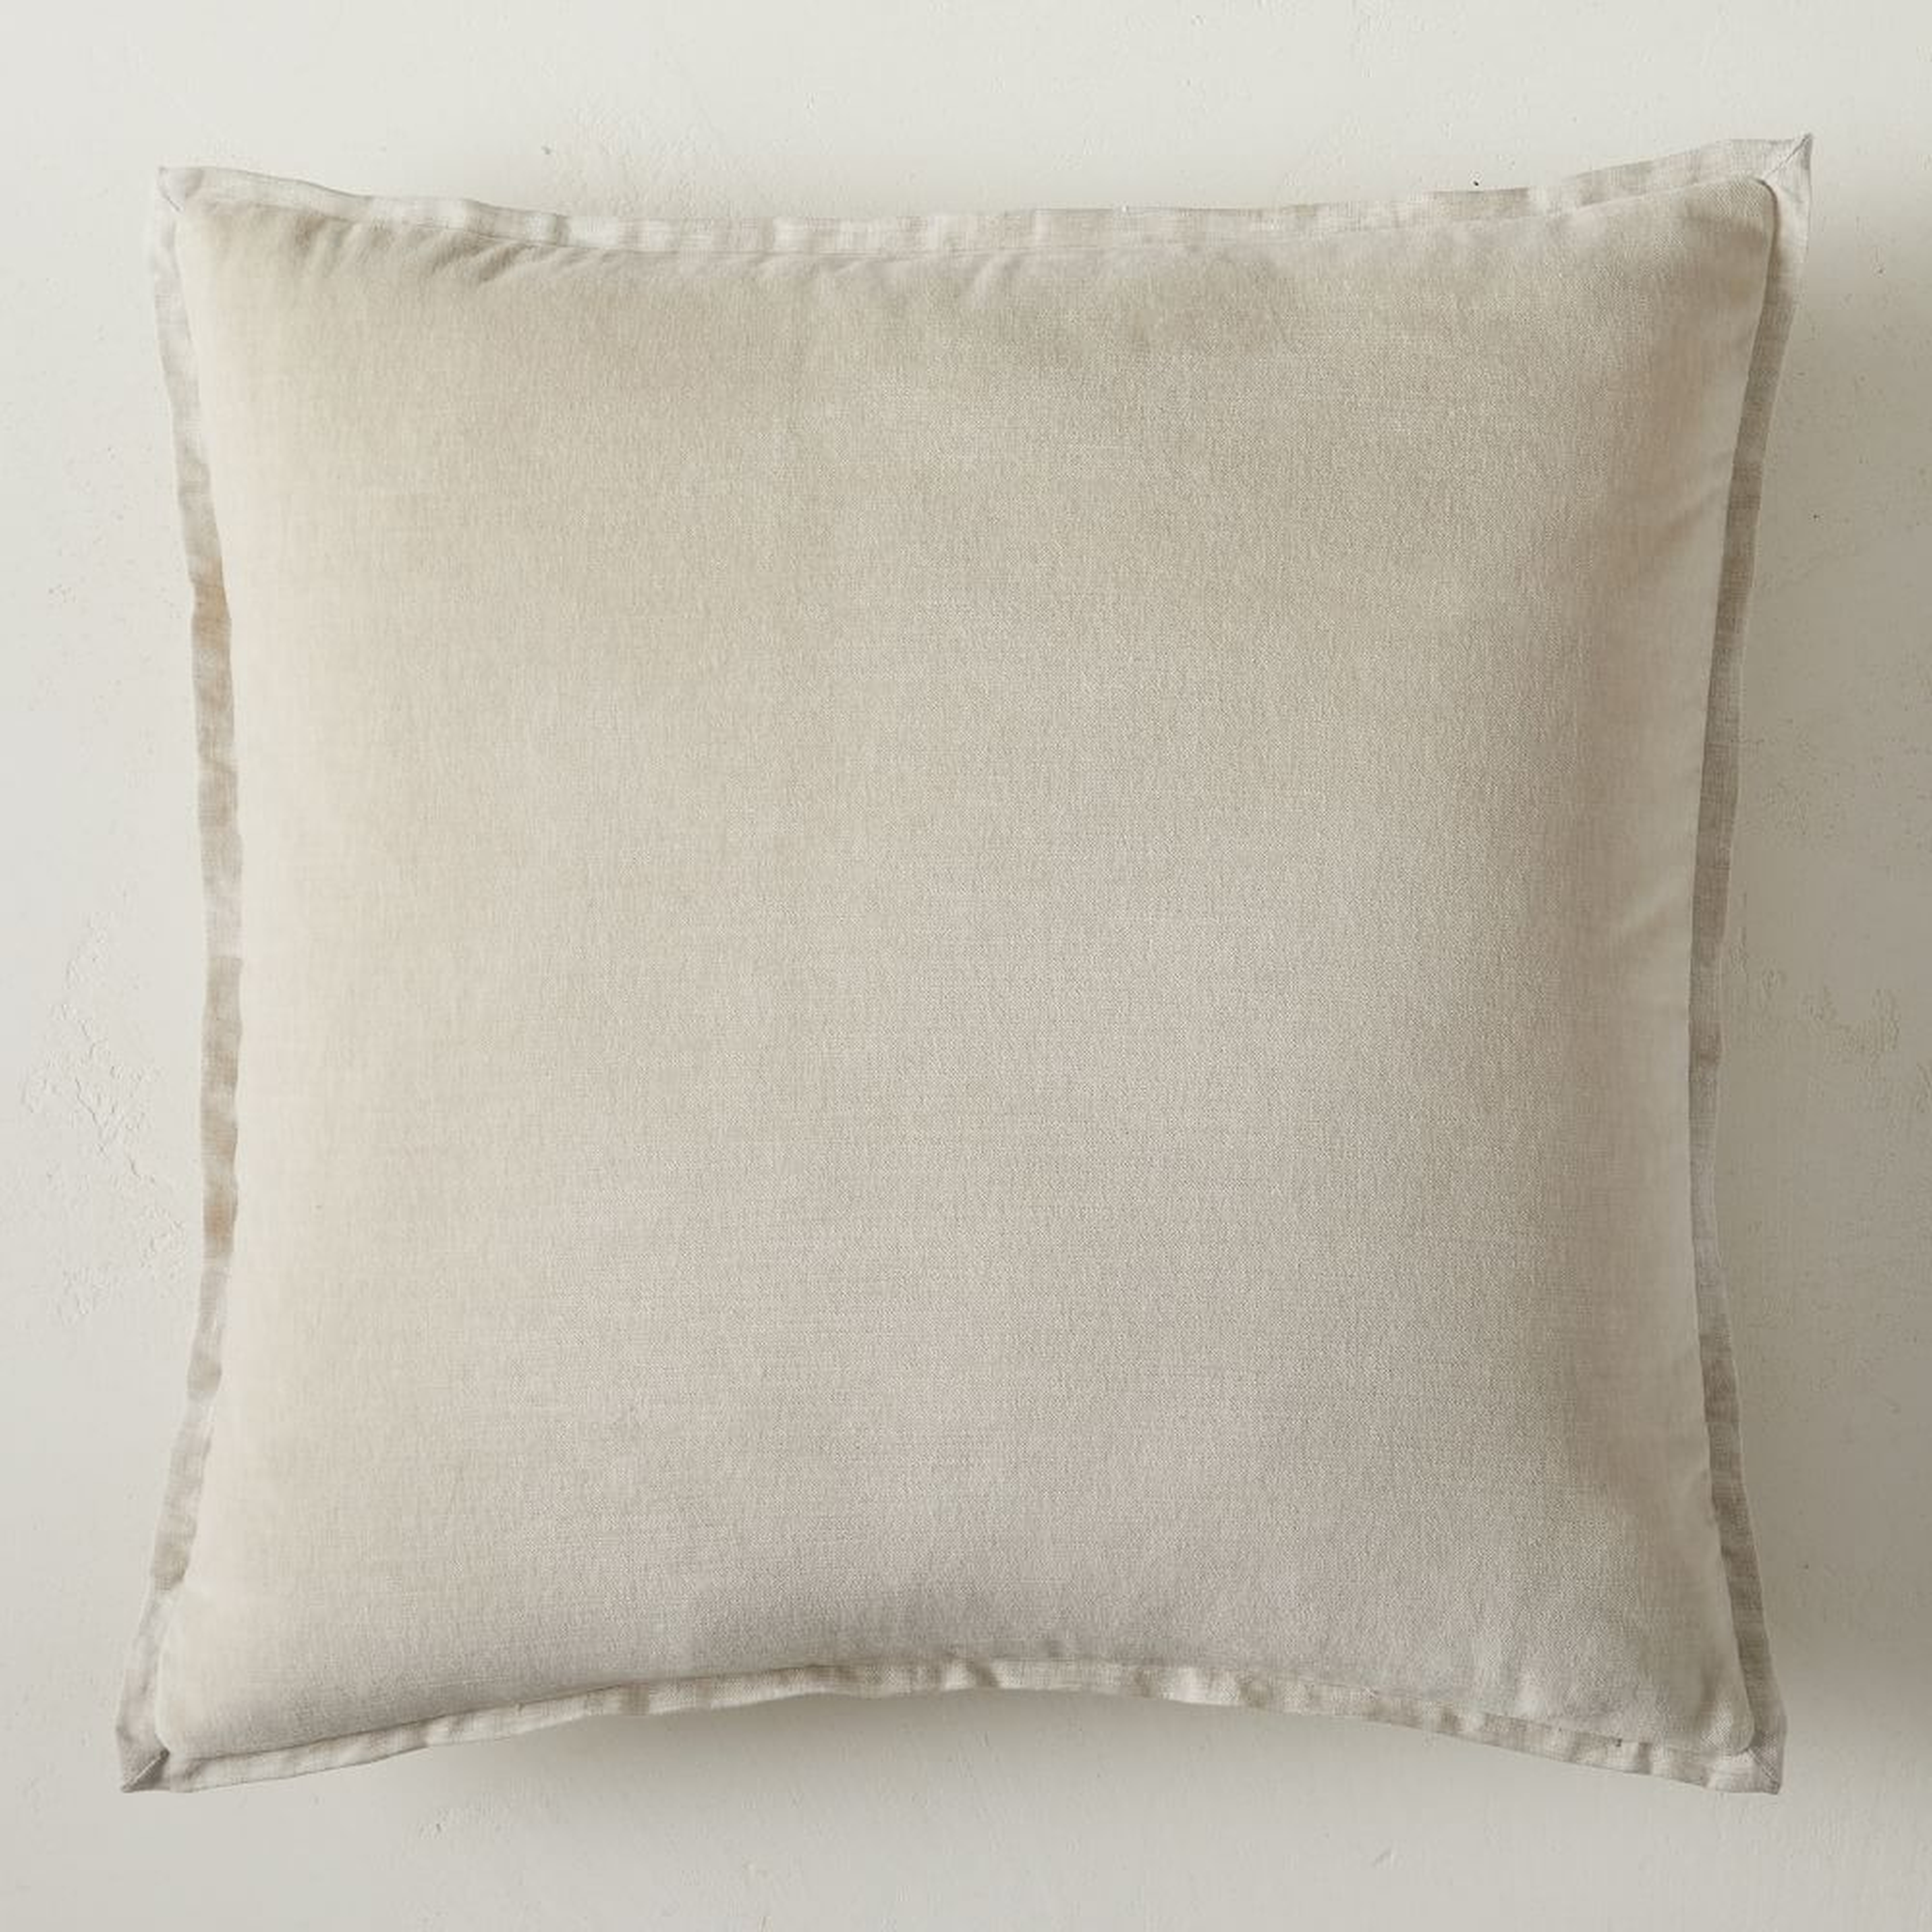 Classic Cotton Velvet Pillow Cover, 20"x20", Natural, Set of 2 - West Elm